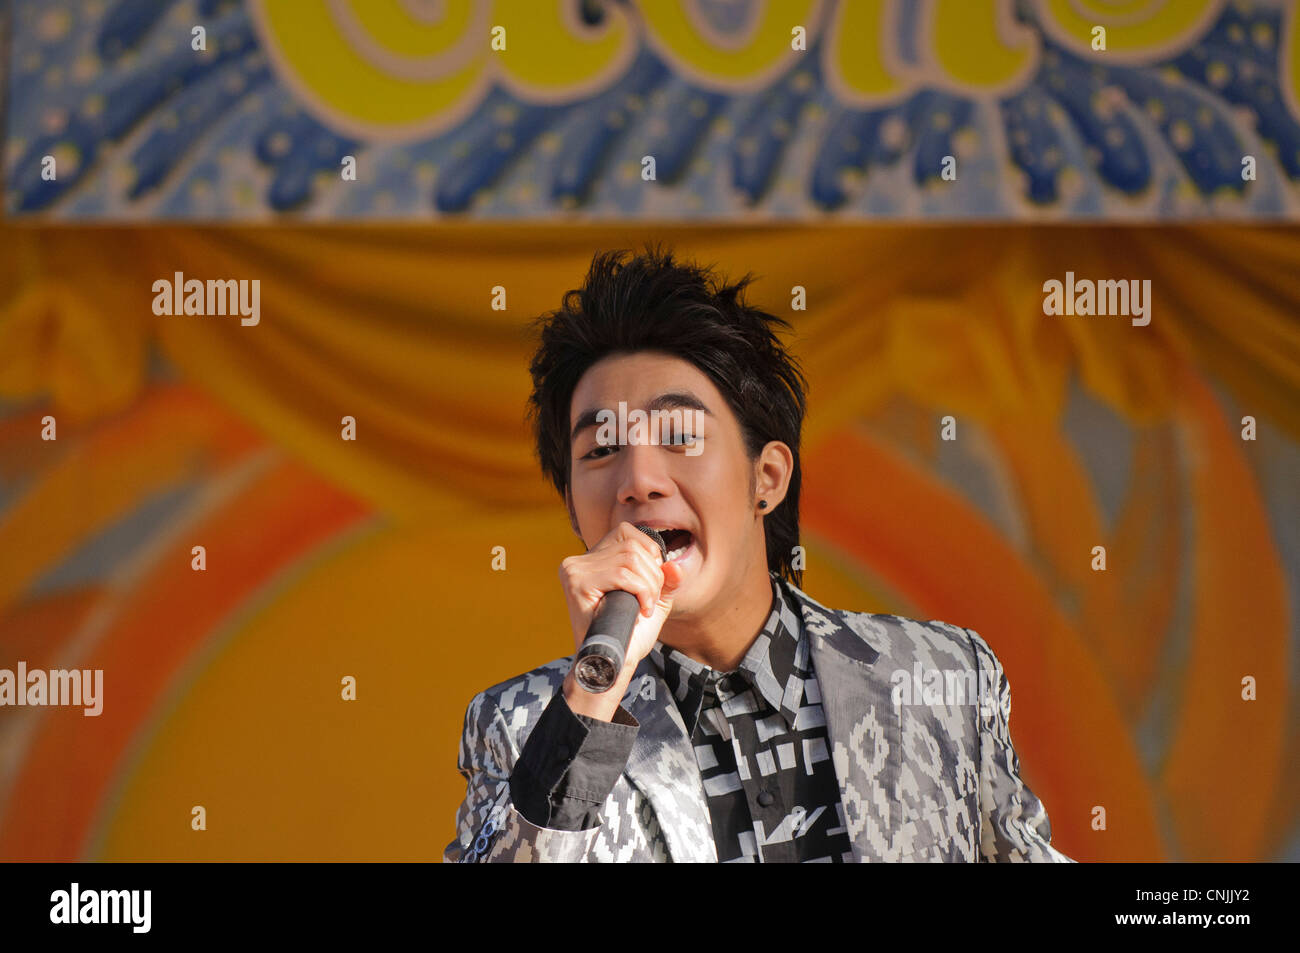 Londres, Royaume-Uni. Pour célébrer Songkran, Nouvel An thaï, un artiste chante une chanson pop thaïlandaise. Banque D'Images